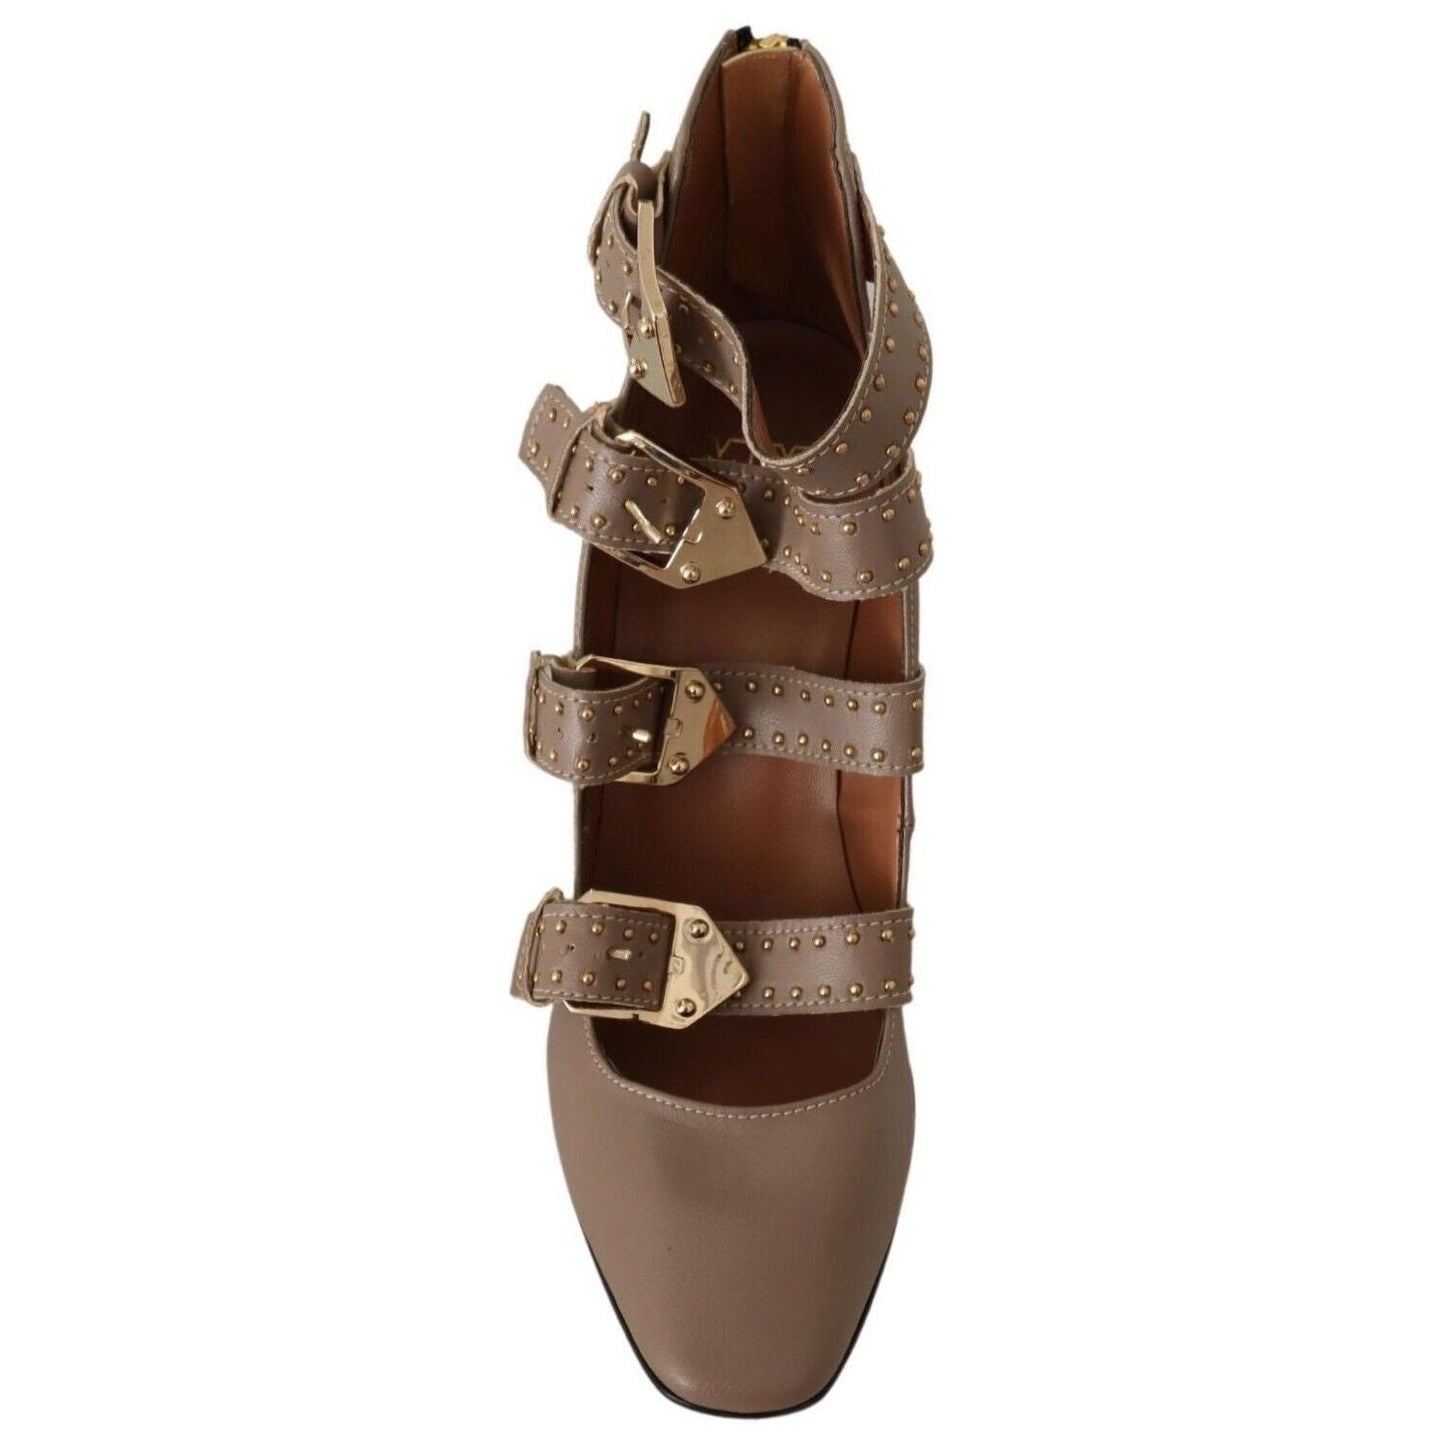 MY TWIN Elegant Leather Multi-Buckle Heels in Brown WOMAN PUMPS brown-leather-block-heels-multi-buckle-pumps-shoes